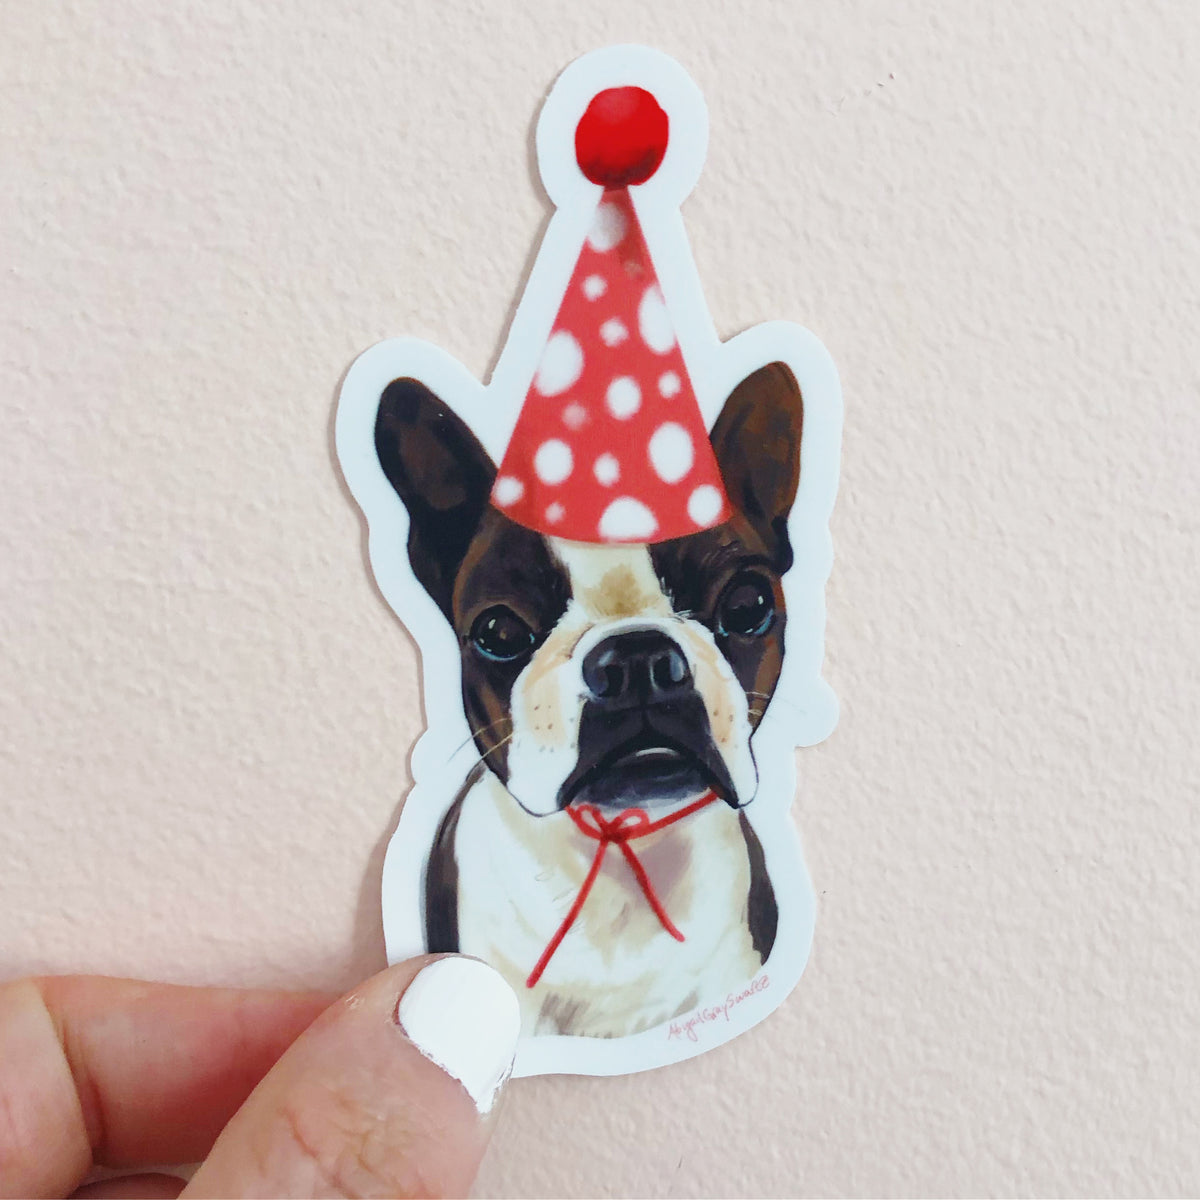 Boston terrier portrait sticker, burthday hat, birthday pup sticker by Abigail Gray Swartz